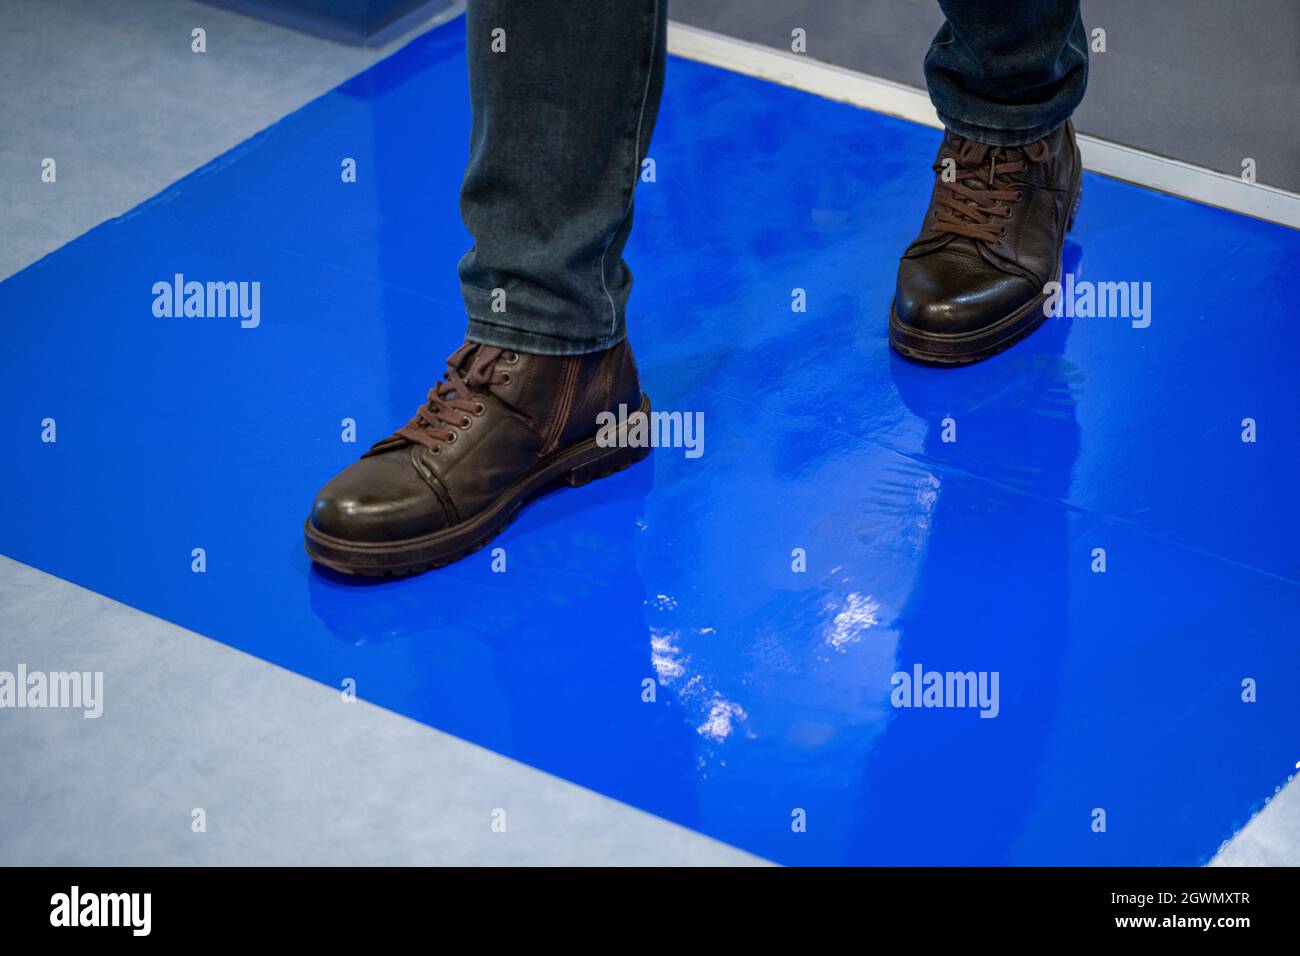 Mann in braunen Schuhen tritt auf blauen Klebstoff klebrige Matten  Stockfotografie - Alamy